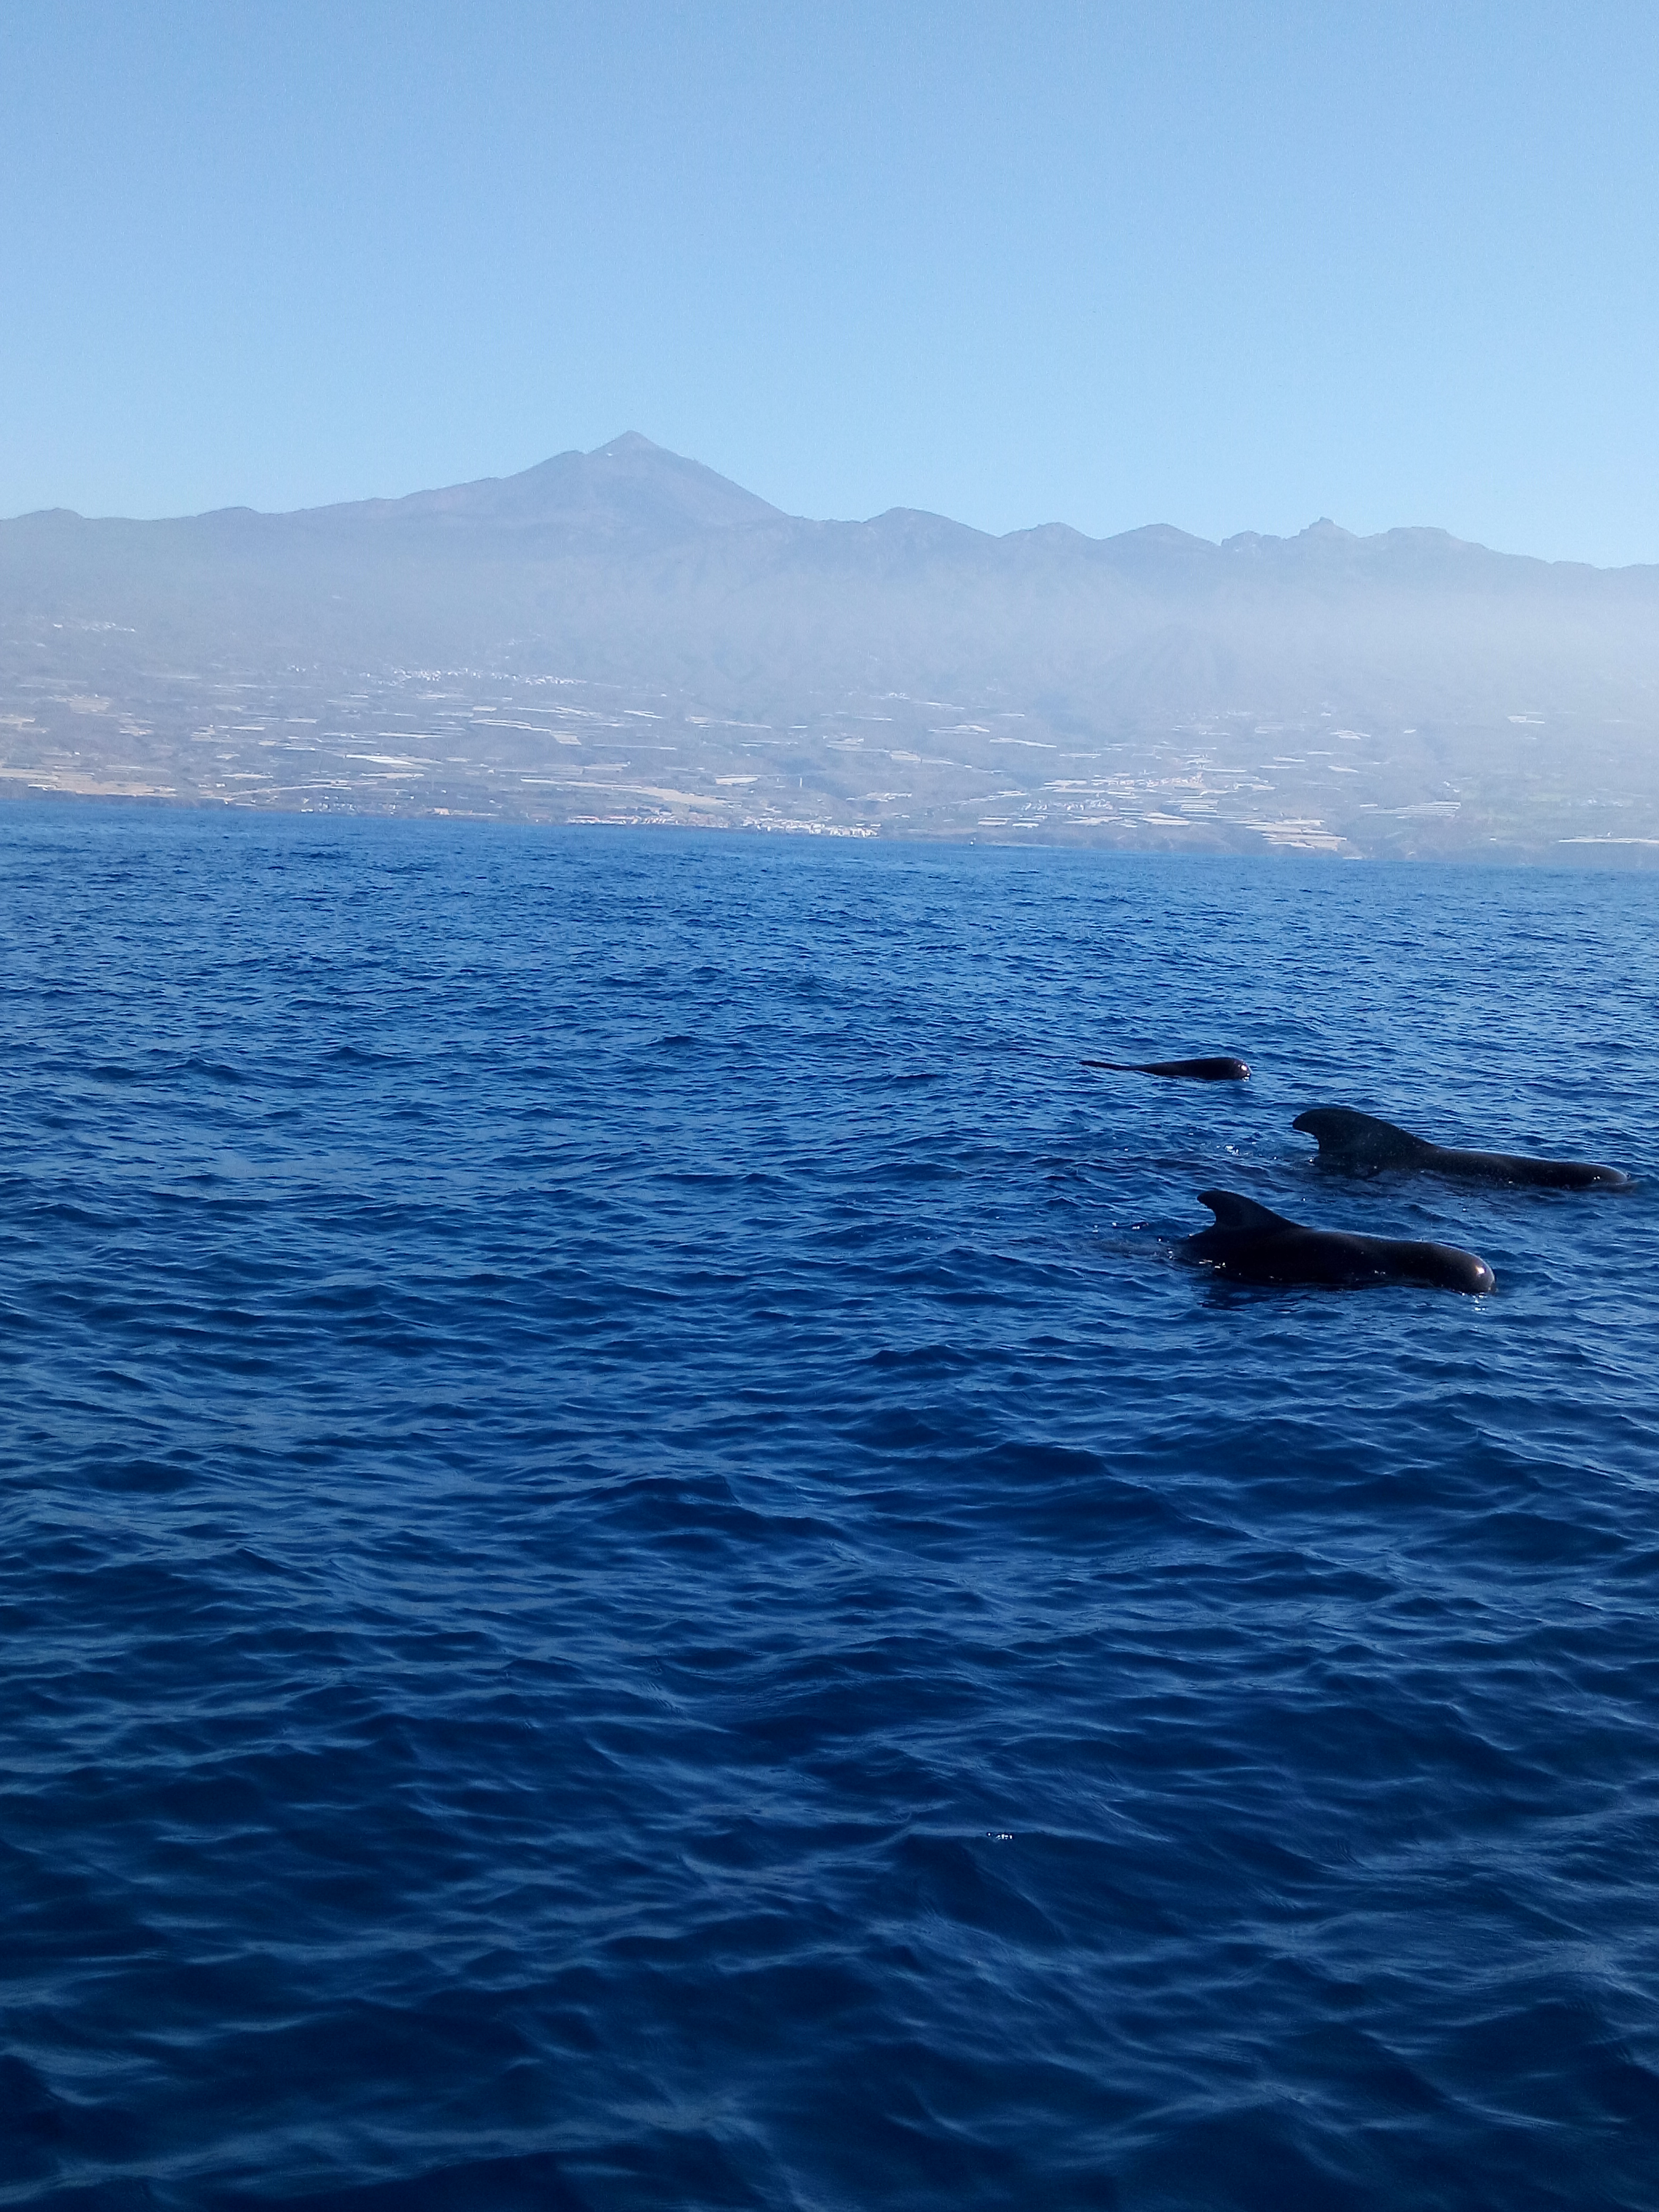 img seapassion charter con visitas a playas y calas tranquilas y exclusivas con avistamiento de cetáceos Ballenas, Cachalotes, delfines y grandes especies